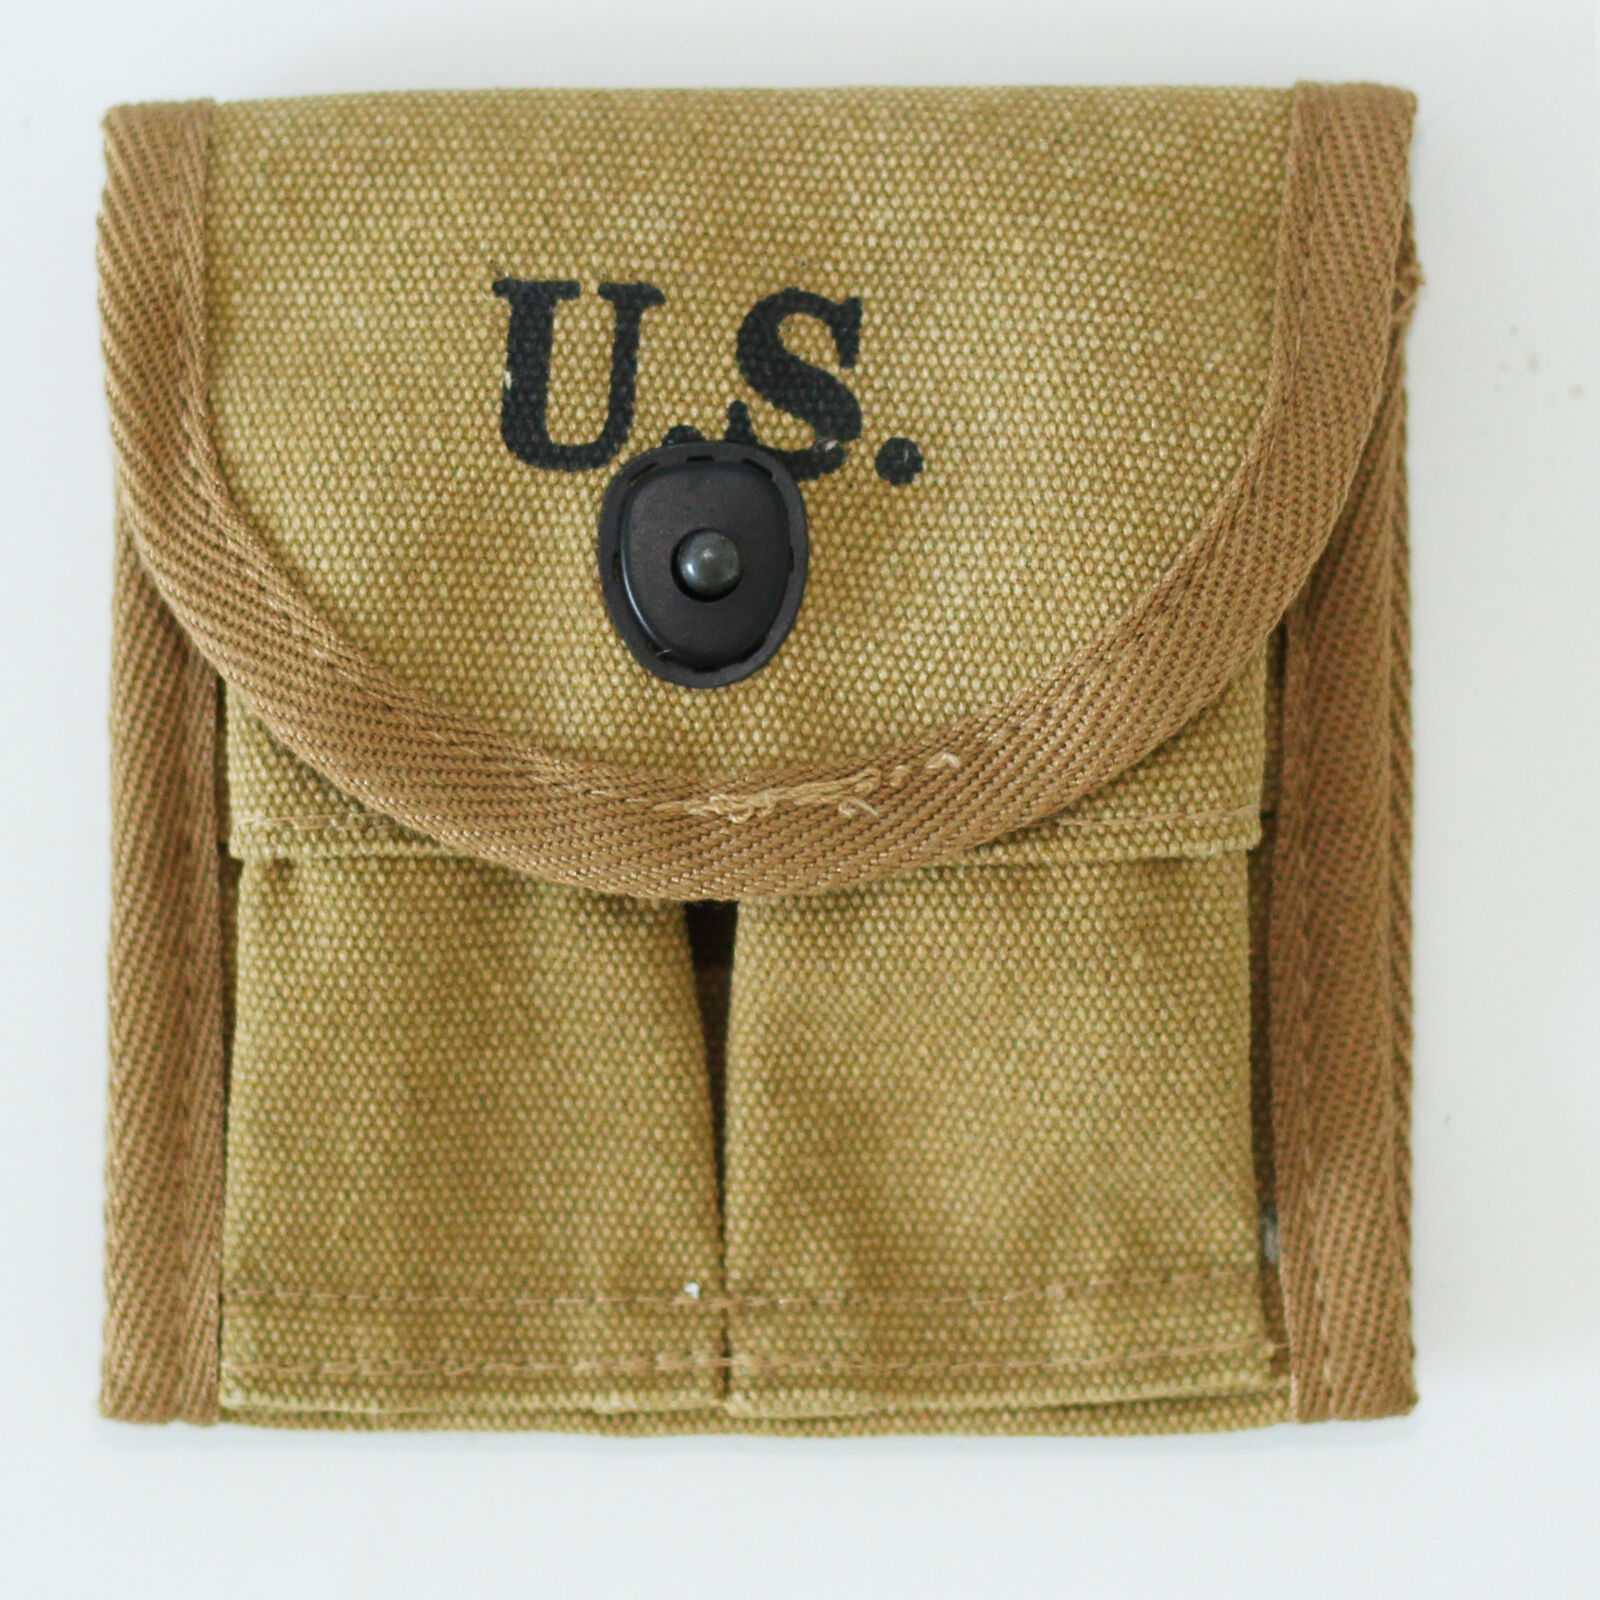 US WW2 M1 Carbine Ammo Pouch Magazine Bag 2 Cells Buttstock Khaki WWII